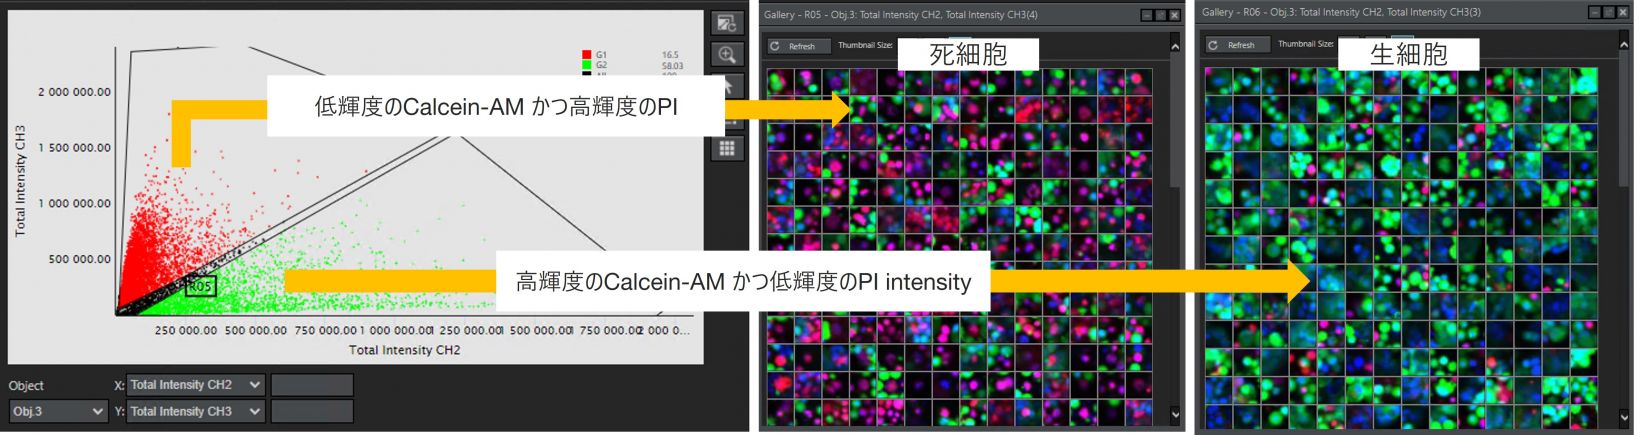 図３．Calcein-AM/PIの輝度を使用した生細胞/死細胞分類に対するNoviSightの解析